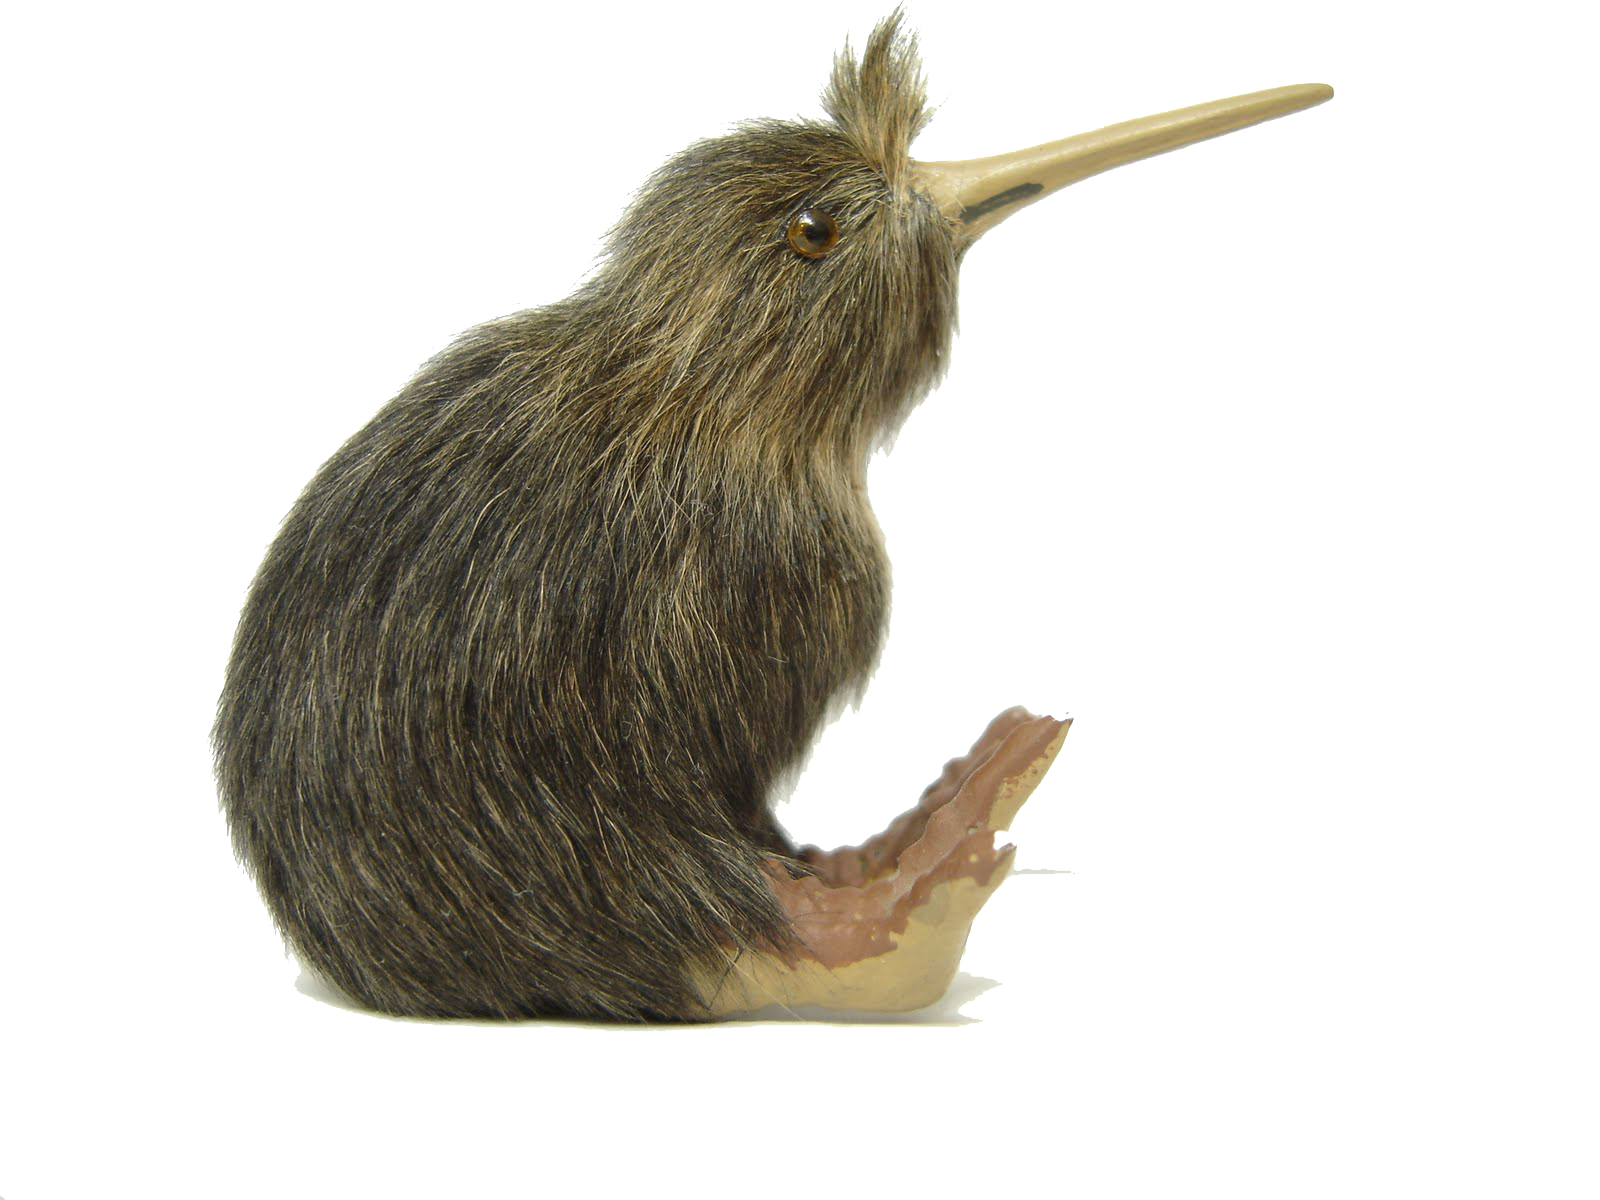 Kiwi Bird Download Free Image PNG Image